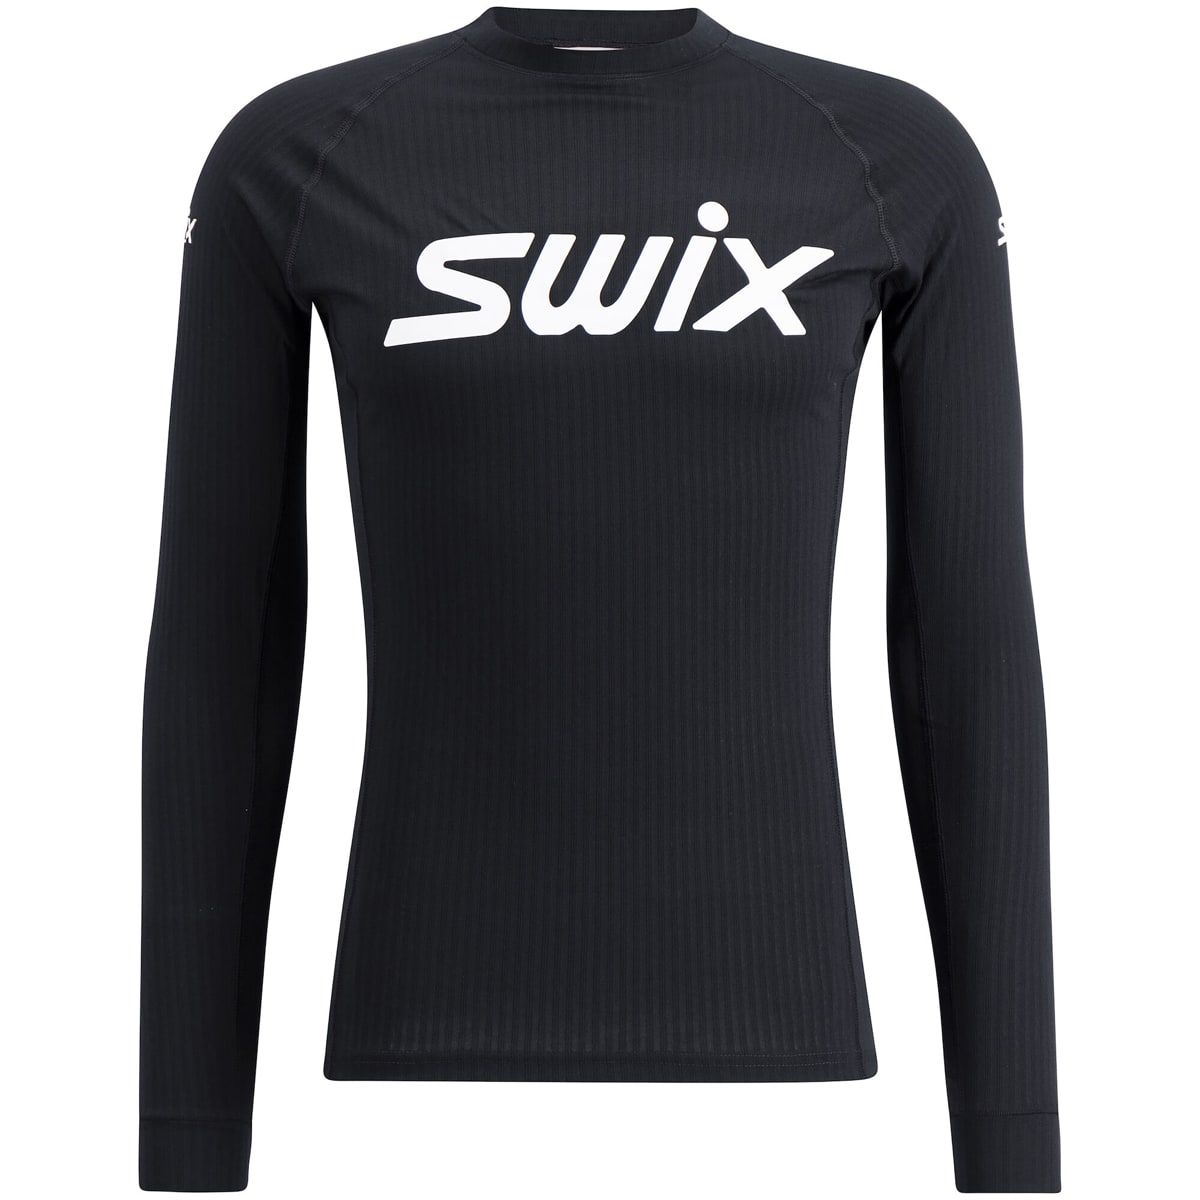 Swix Racex Classic Long Sleeve M Black